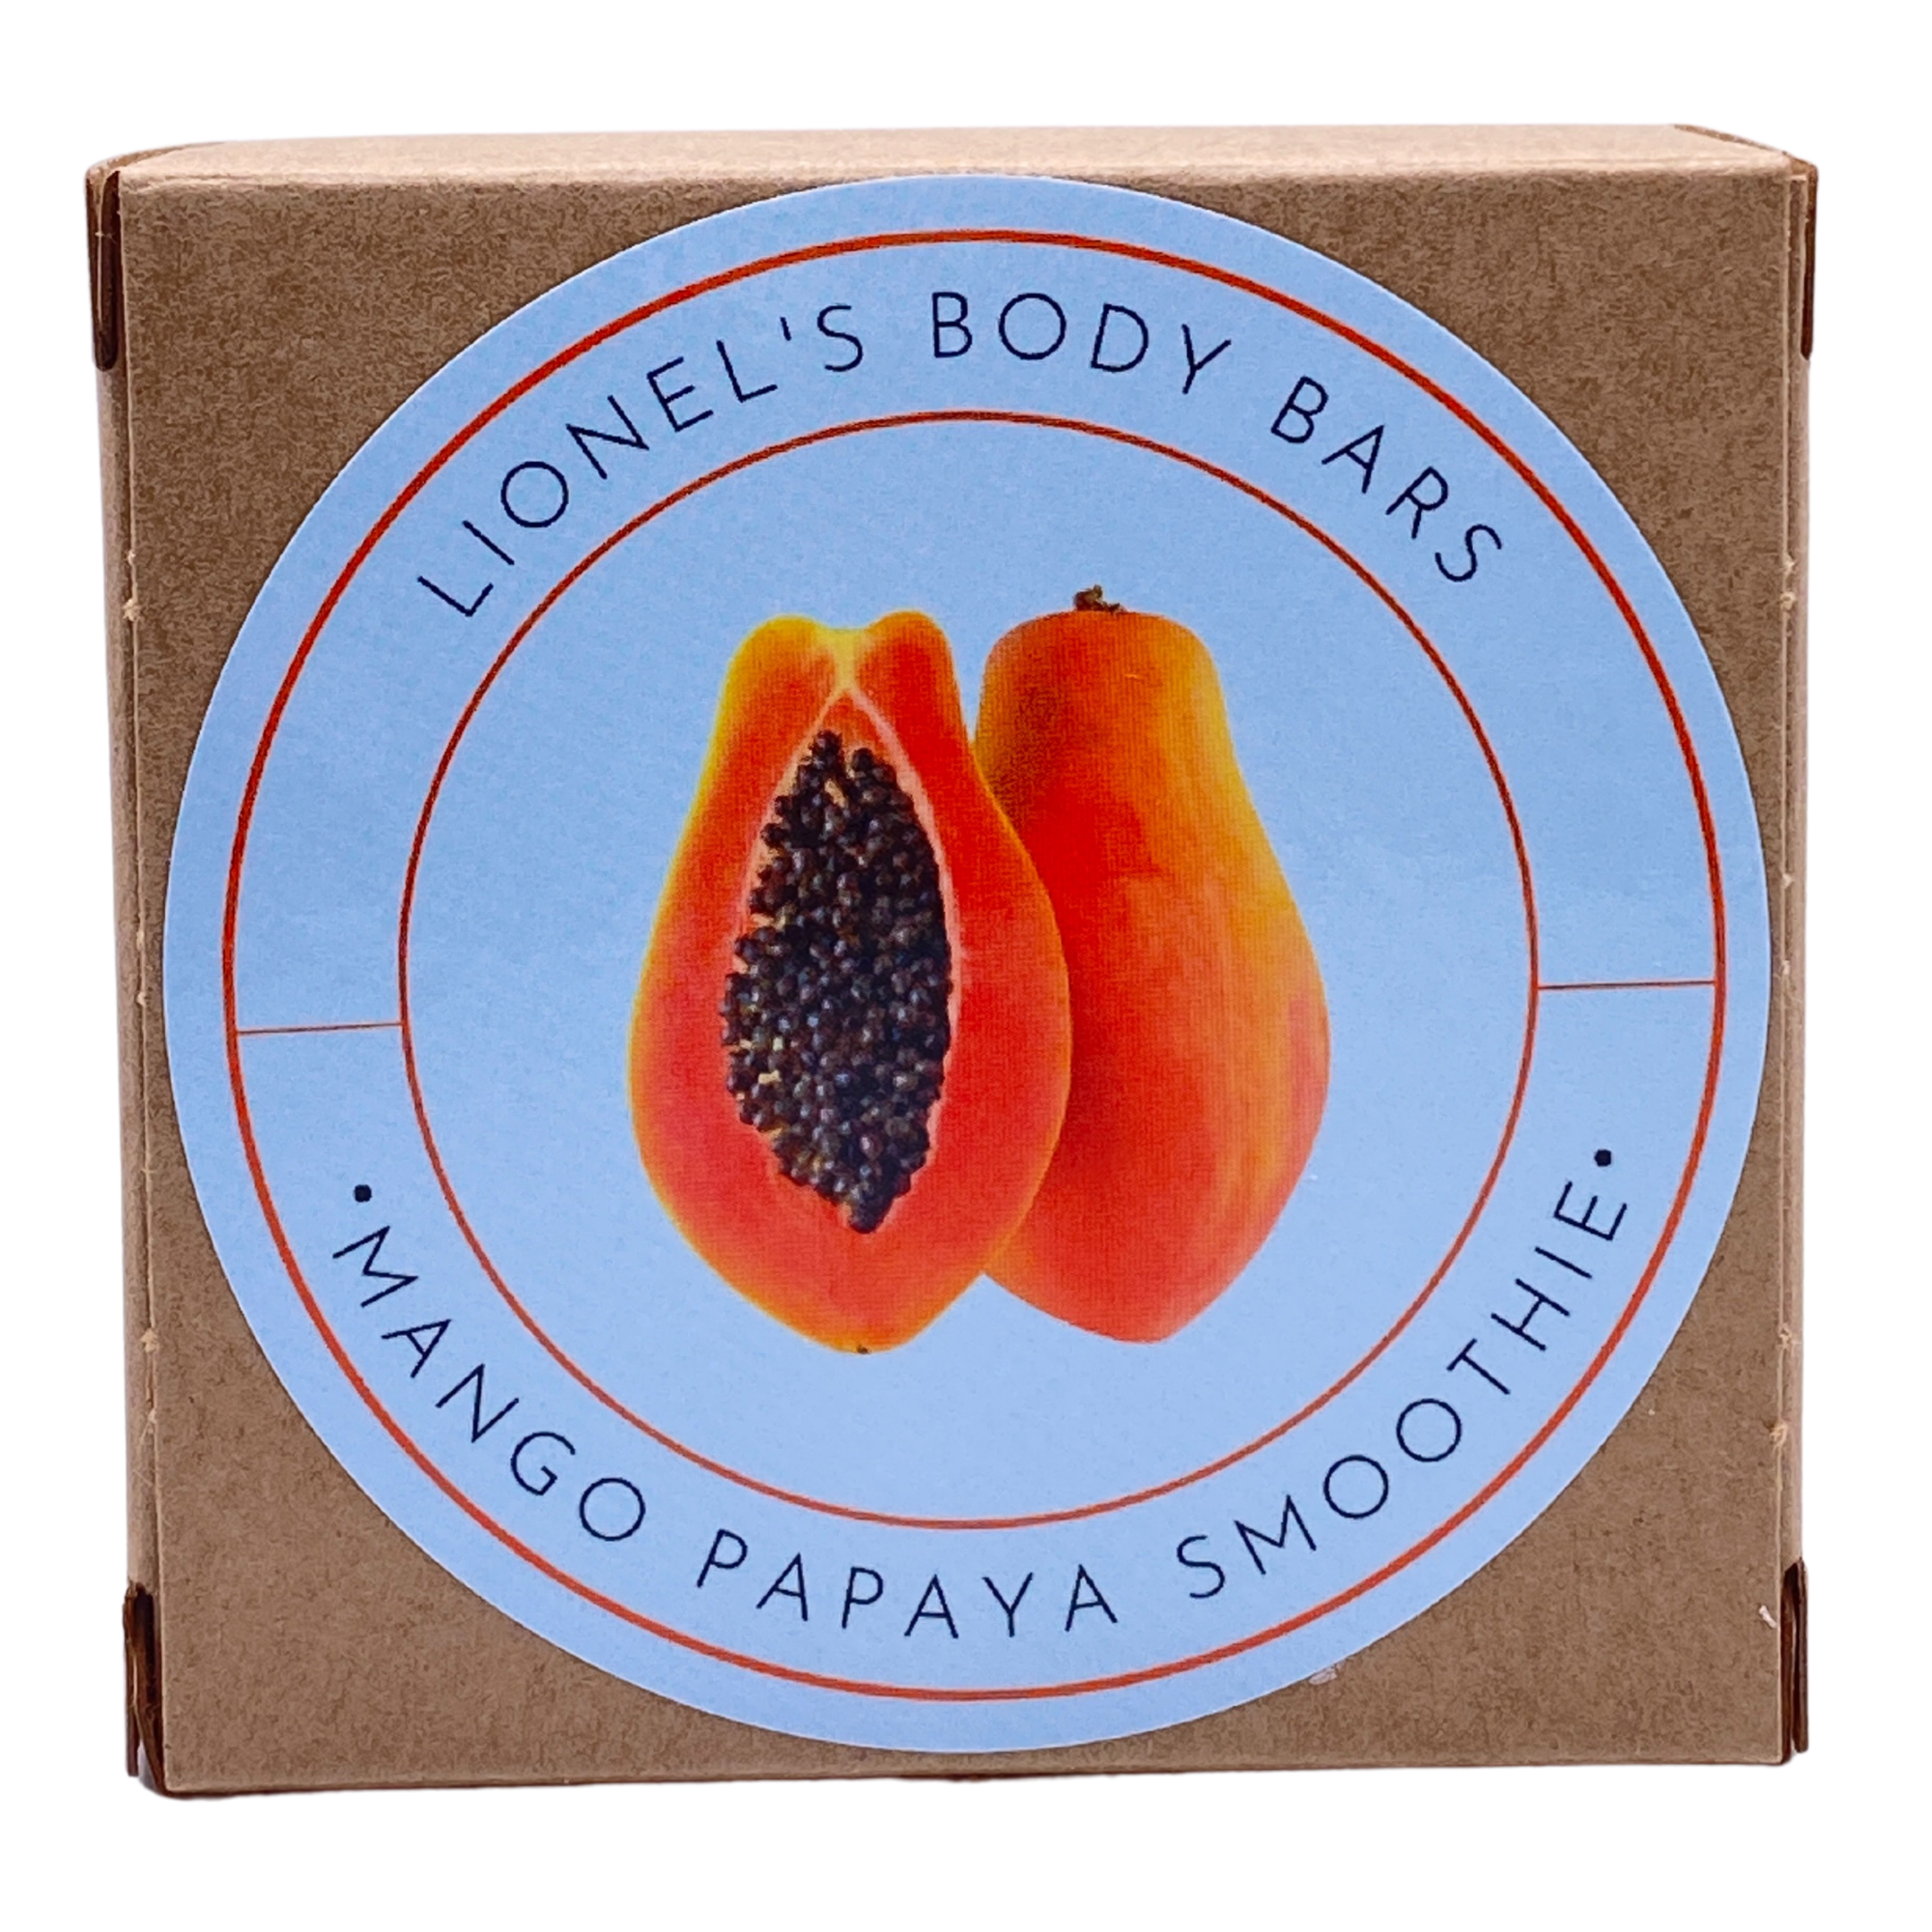 Mango Papaya Smoothie Body Bar